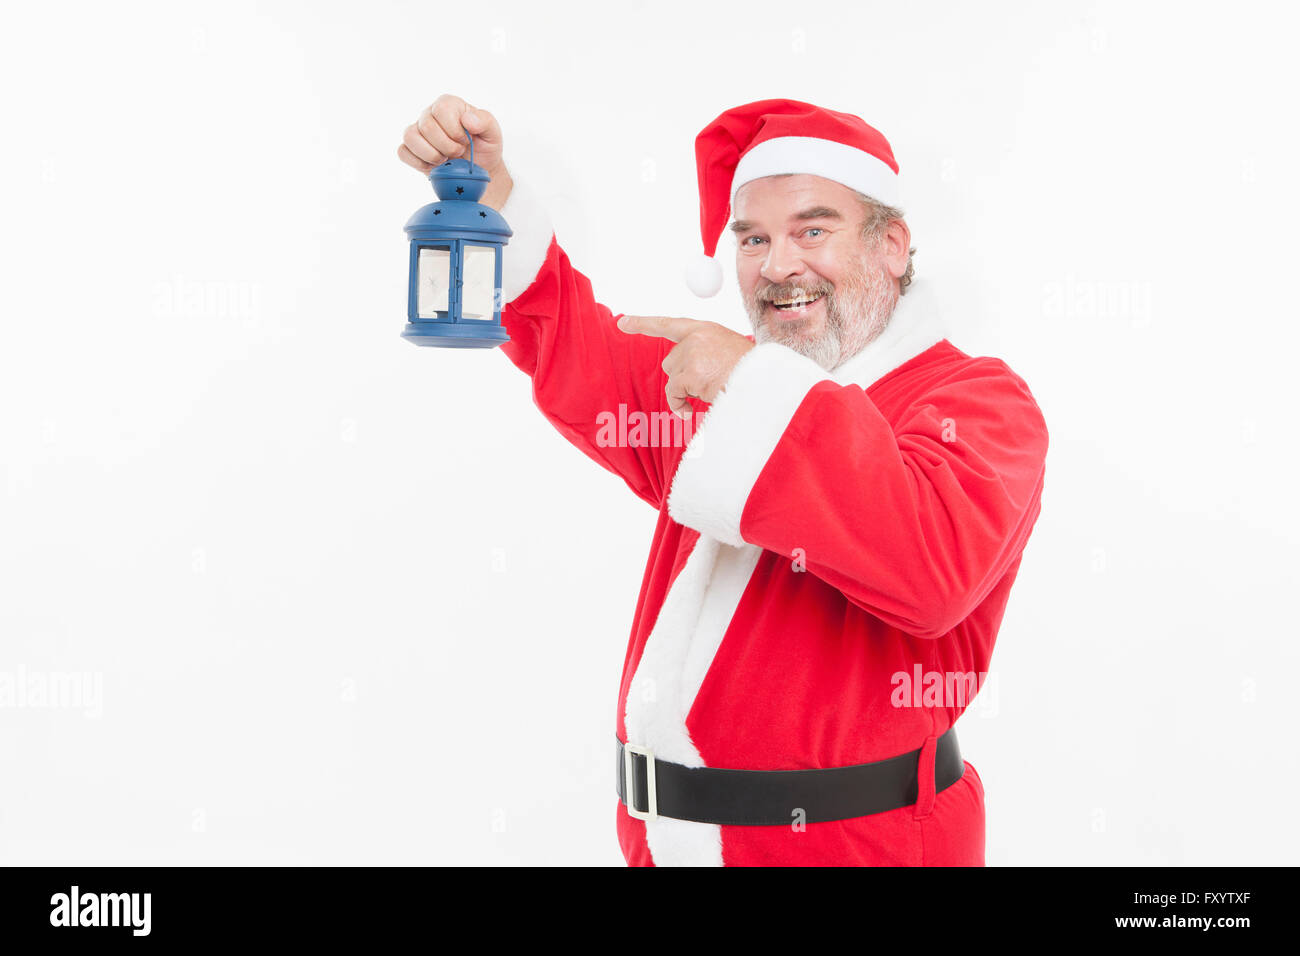 Portrait of smiling man dans la quarantaine avancée à Santa's clothes holding et pointant vers une lanterne à regarder/ Banque D'Images